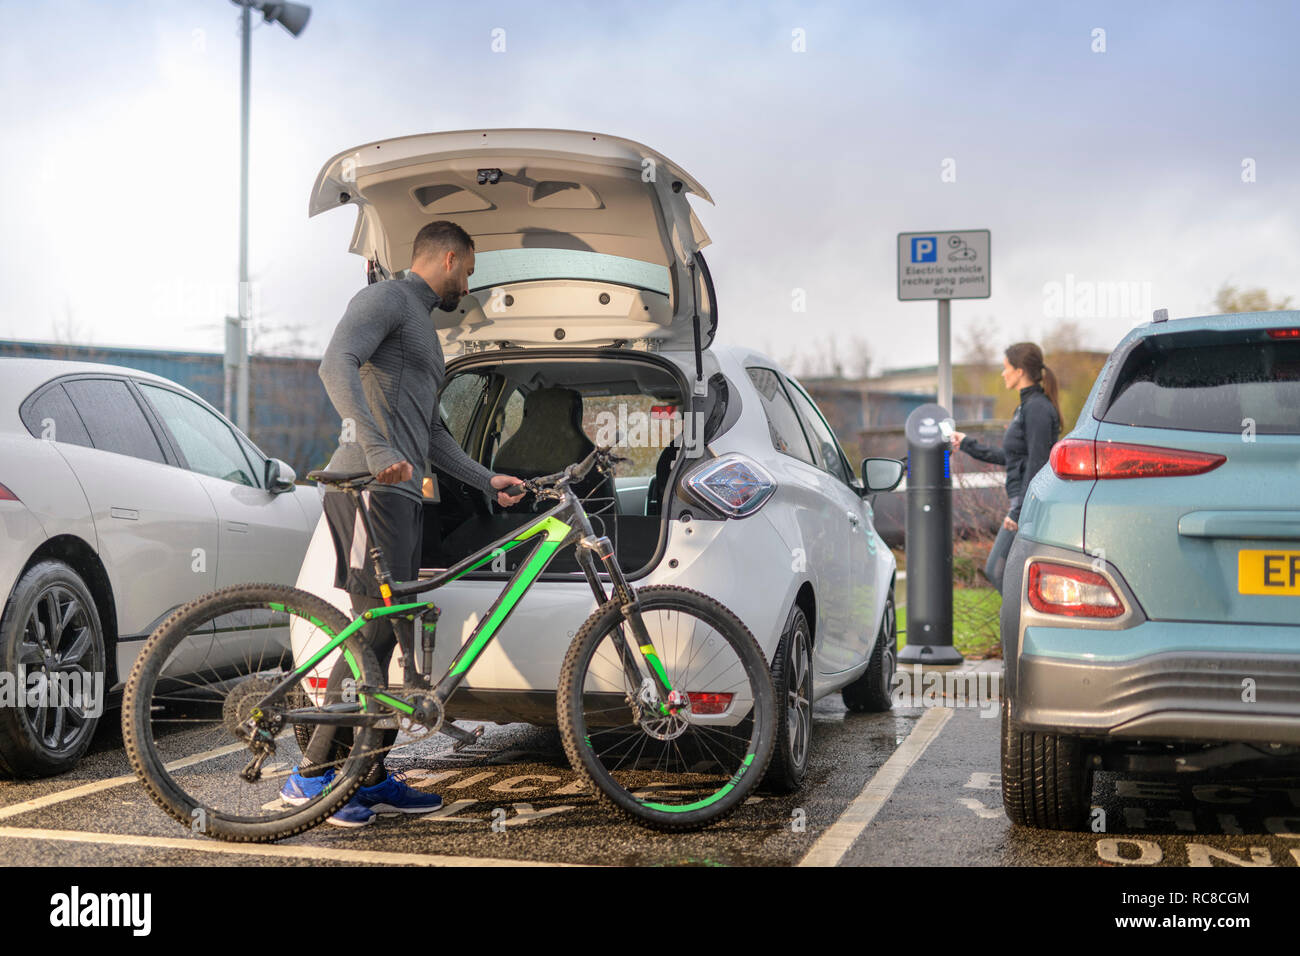 El hombre y la mujer con el mountain bike a punto de carga de coches eléctricos, Manchester, Reino Unido Foto de stock